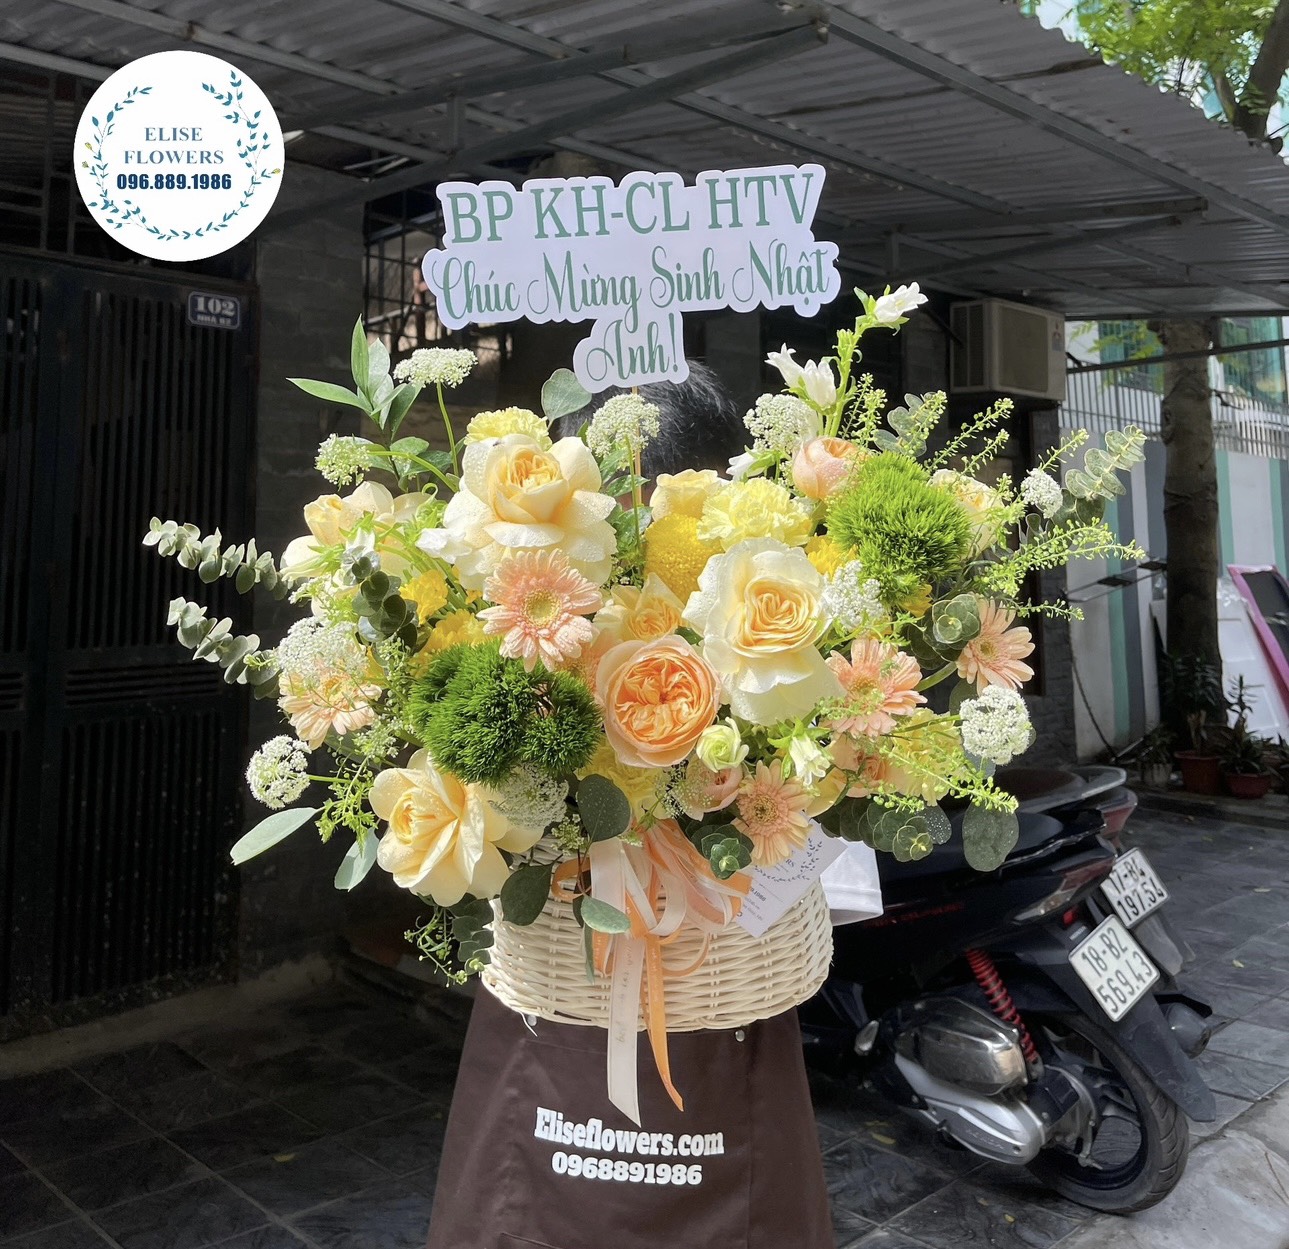 Giỏ hoa chúc mừng khai trương nhỏ xinh ở Hà Nội. Lẵng hoa chúc mừng khai trương nhỏ xinh ở Hà Nội.